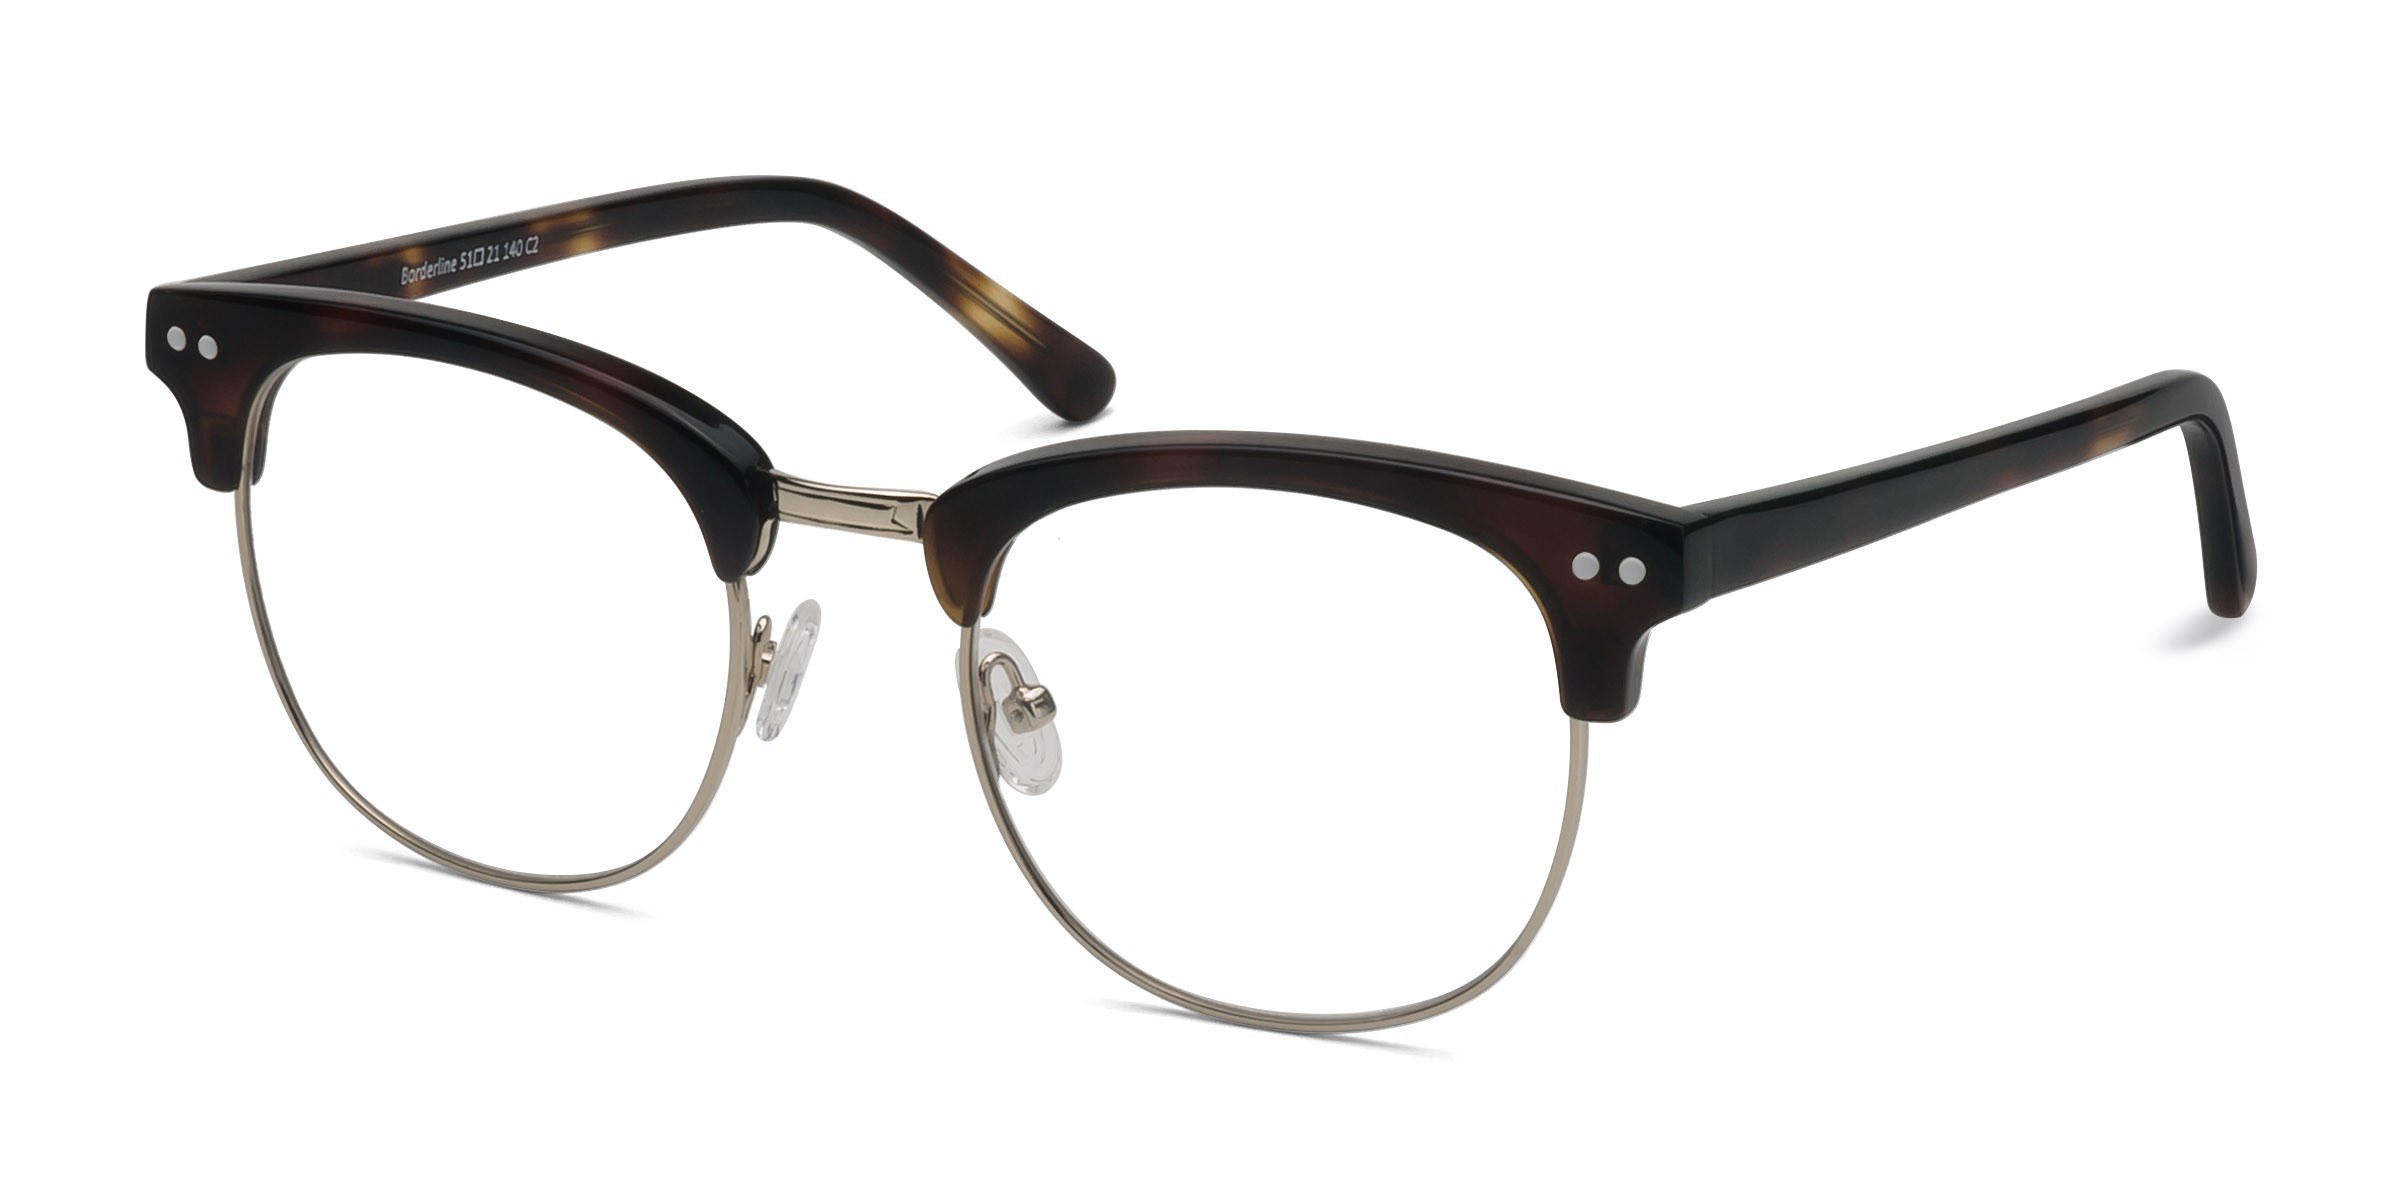 Reading Glasses - Quality Reading Eyeglasses Online | EyeBuyDirect